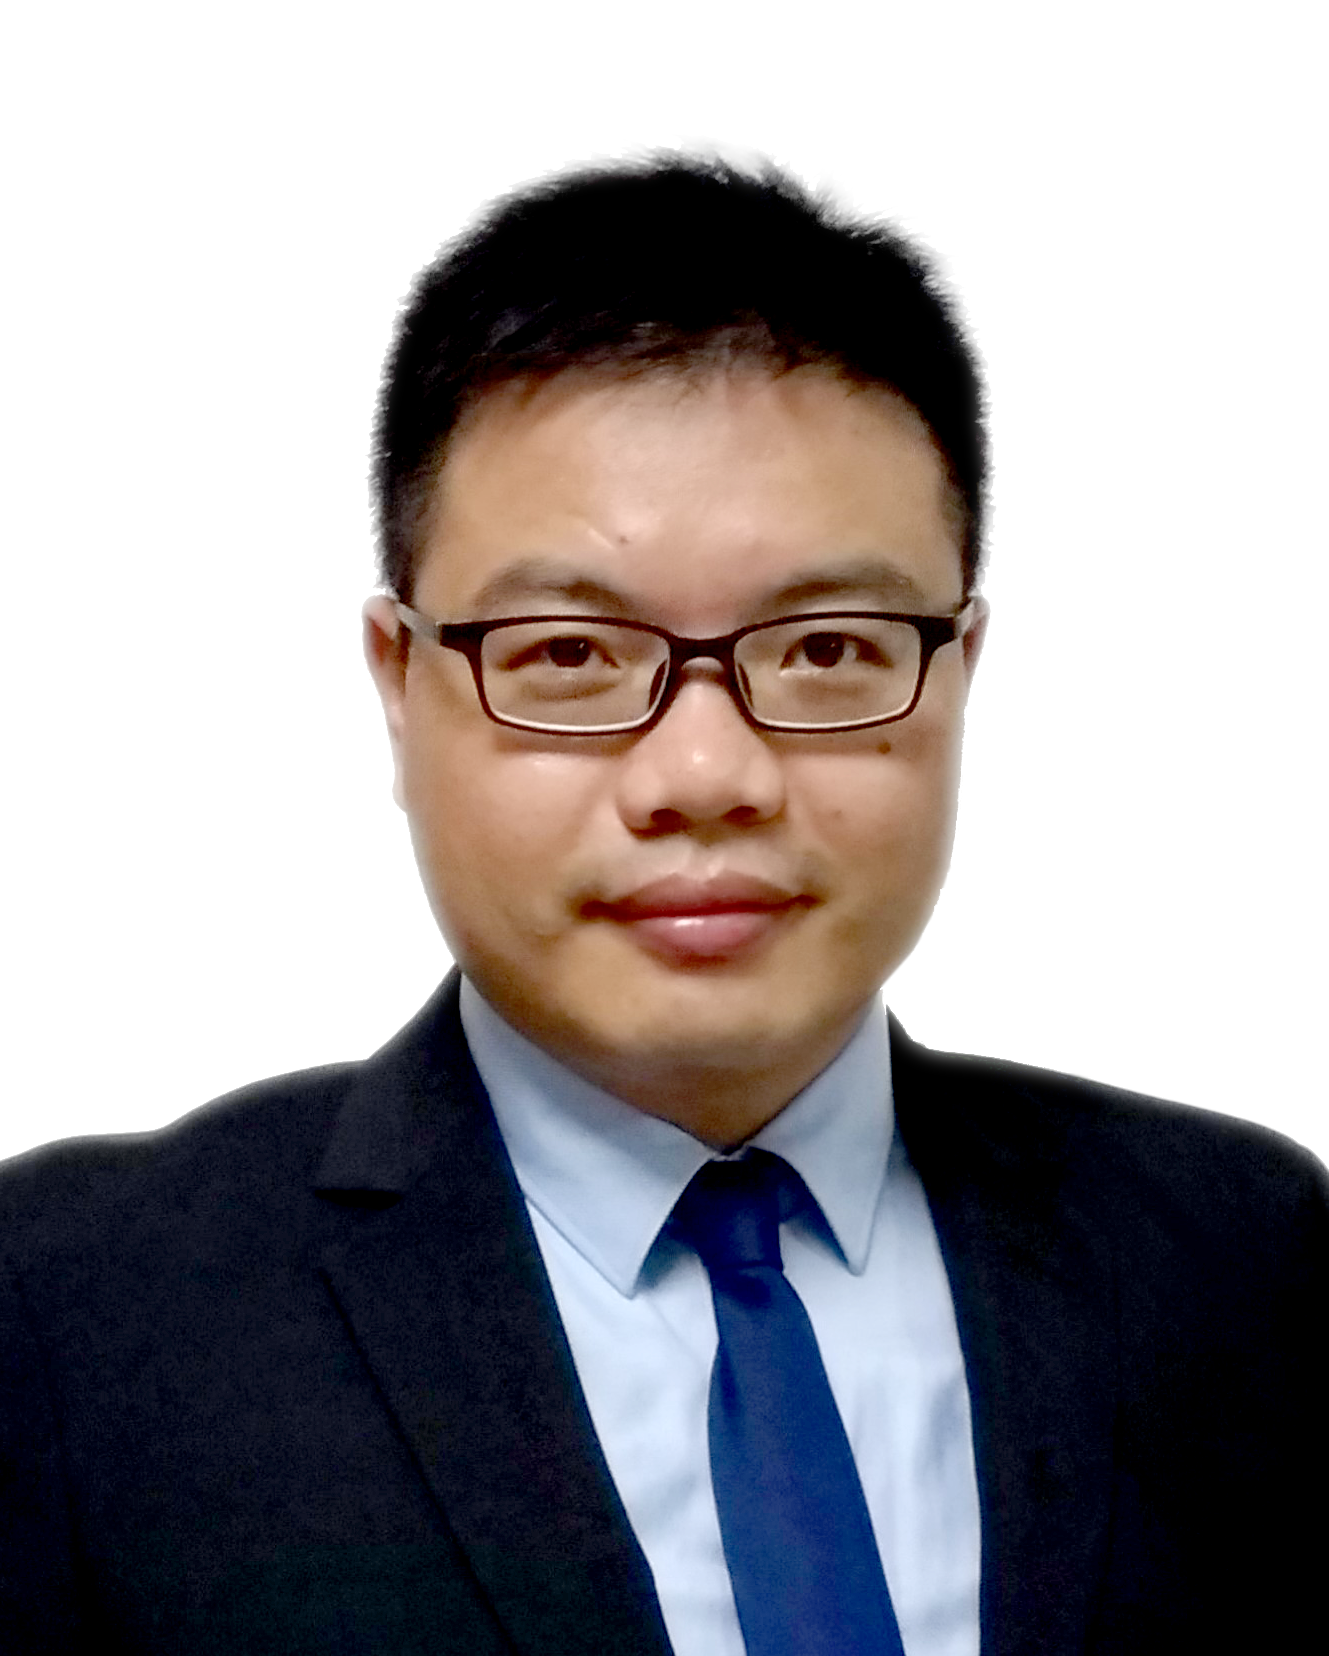 Dr Zhu Peng Cheng